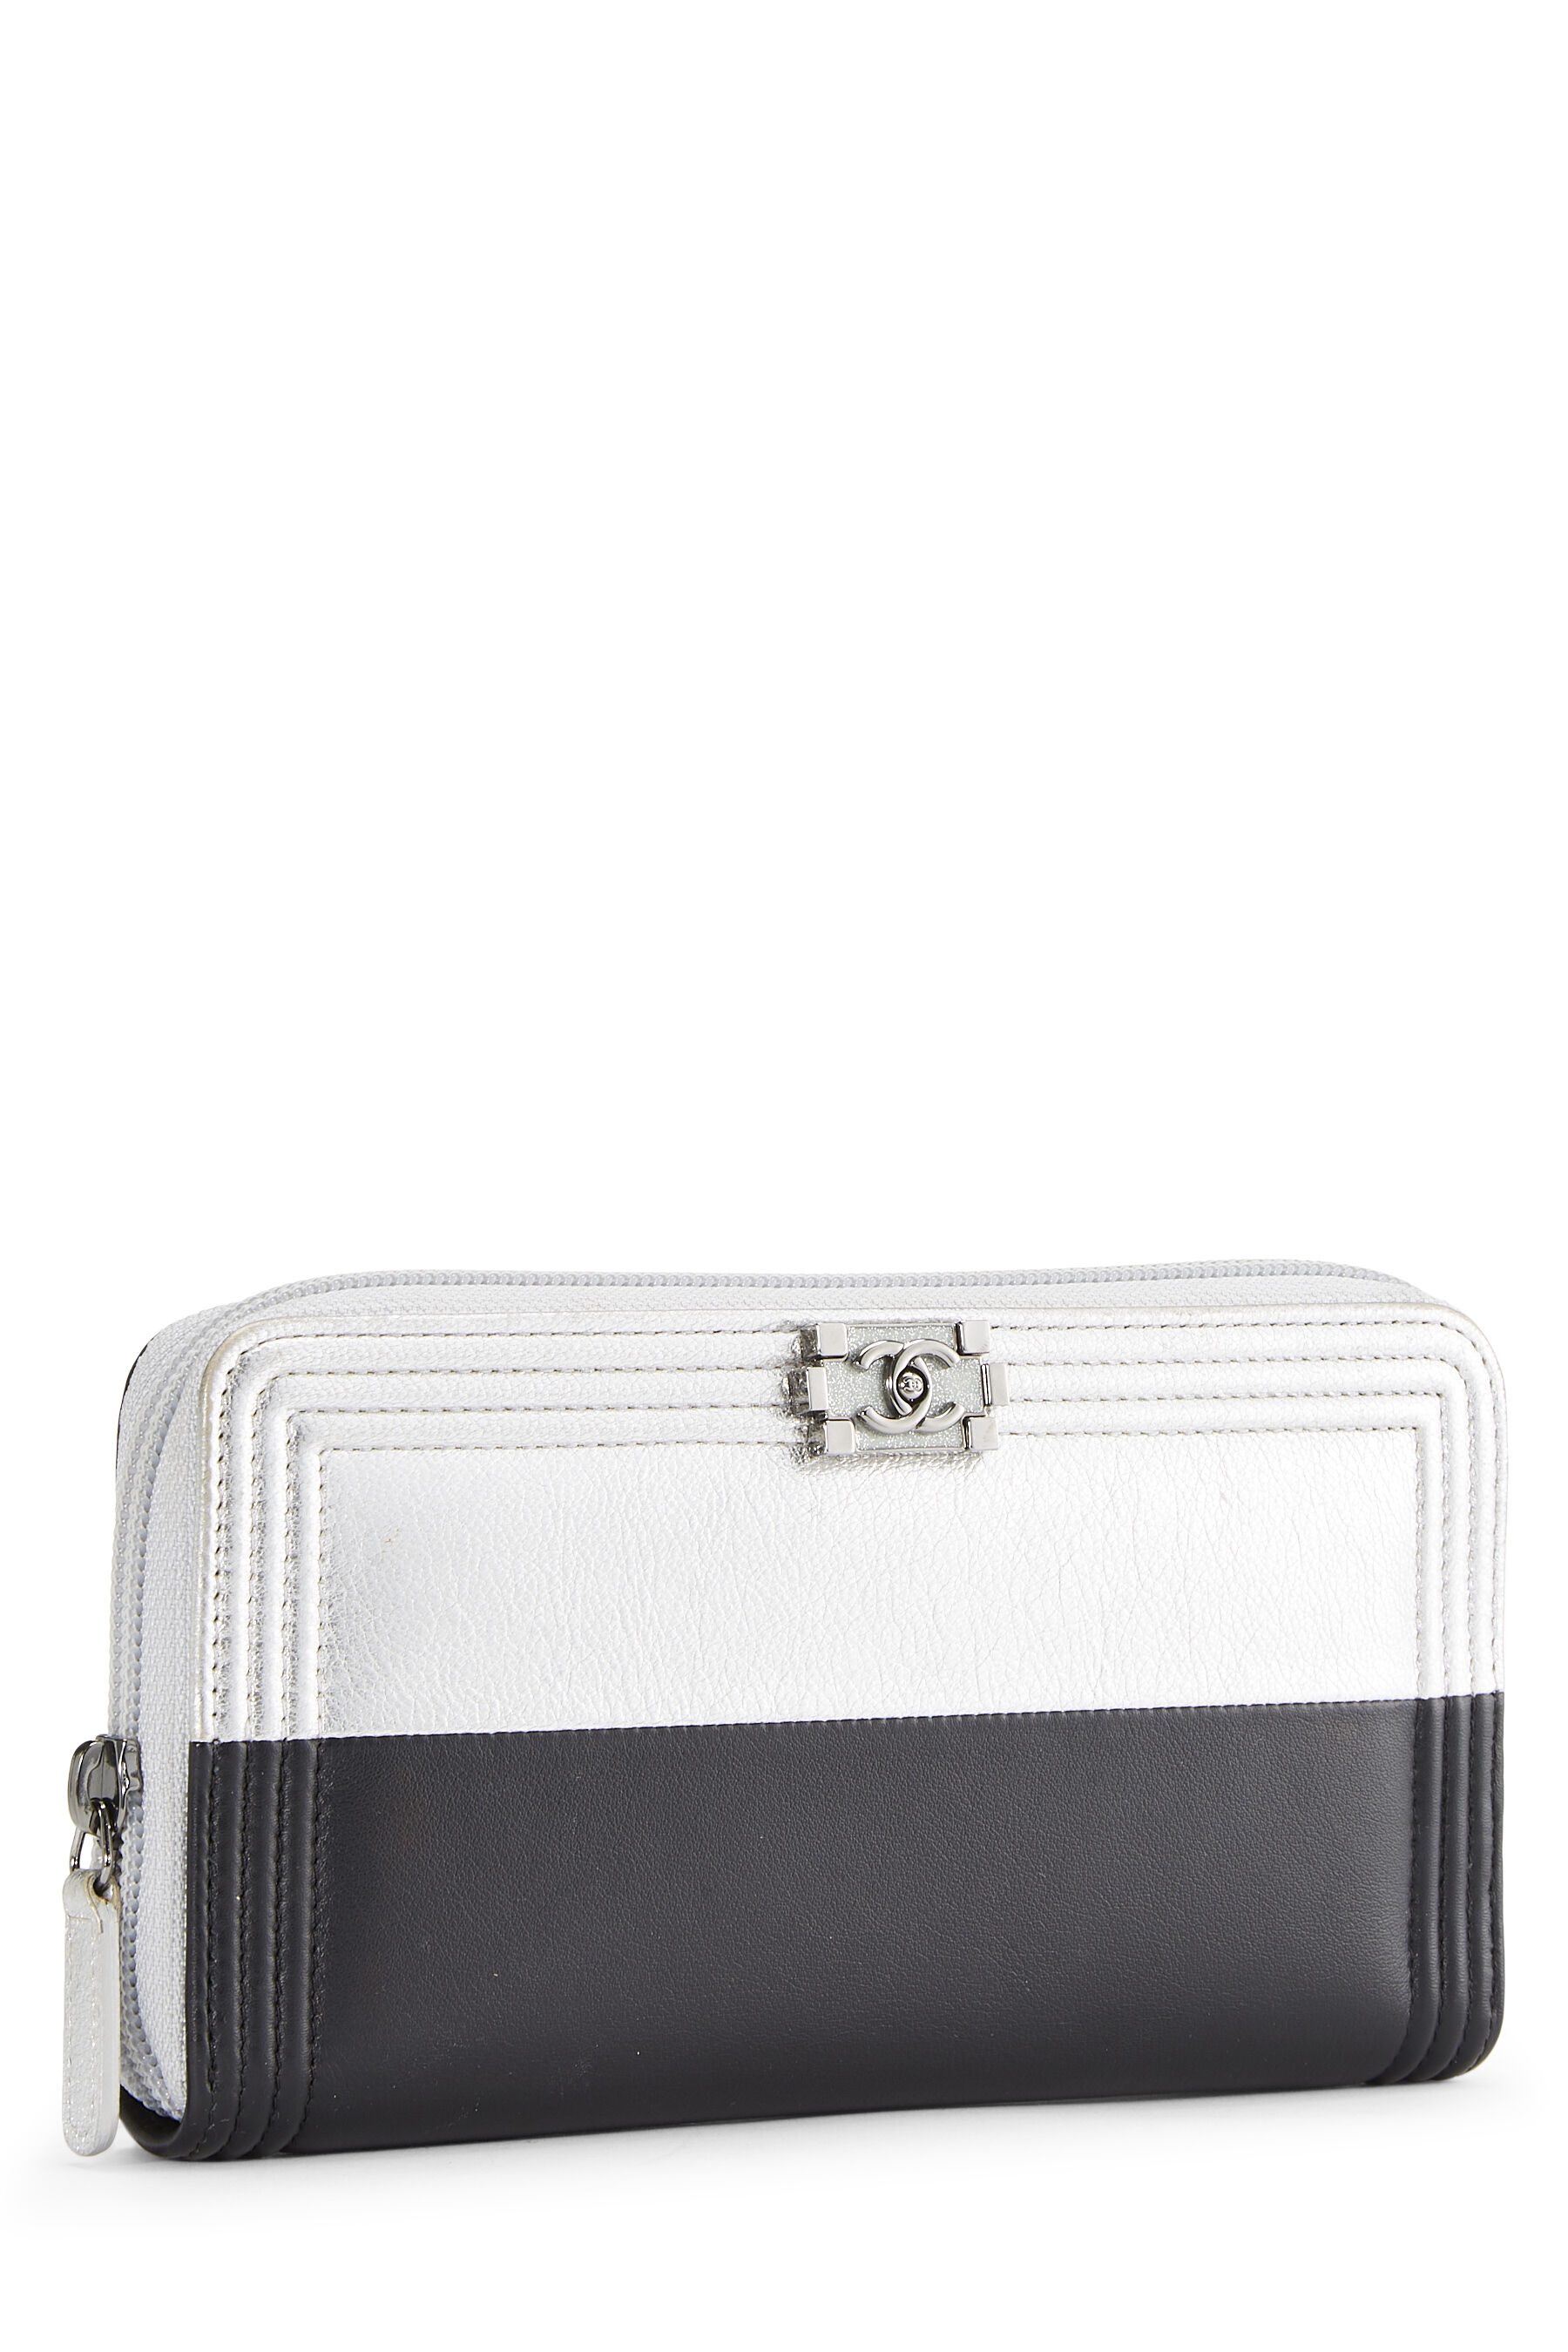 Chanel Metallic Silver & Black Lambskin Boy Wallet Q6A3LS1IMB001